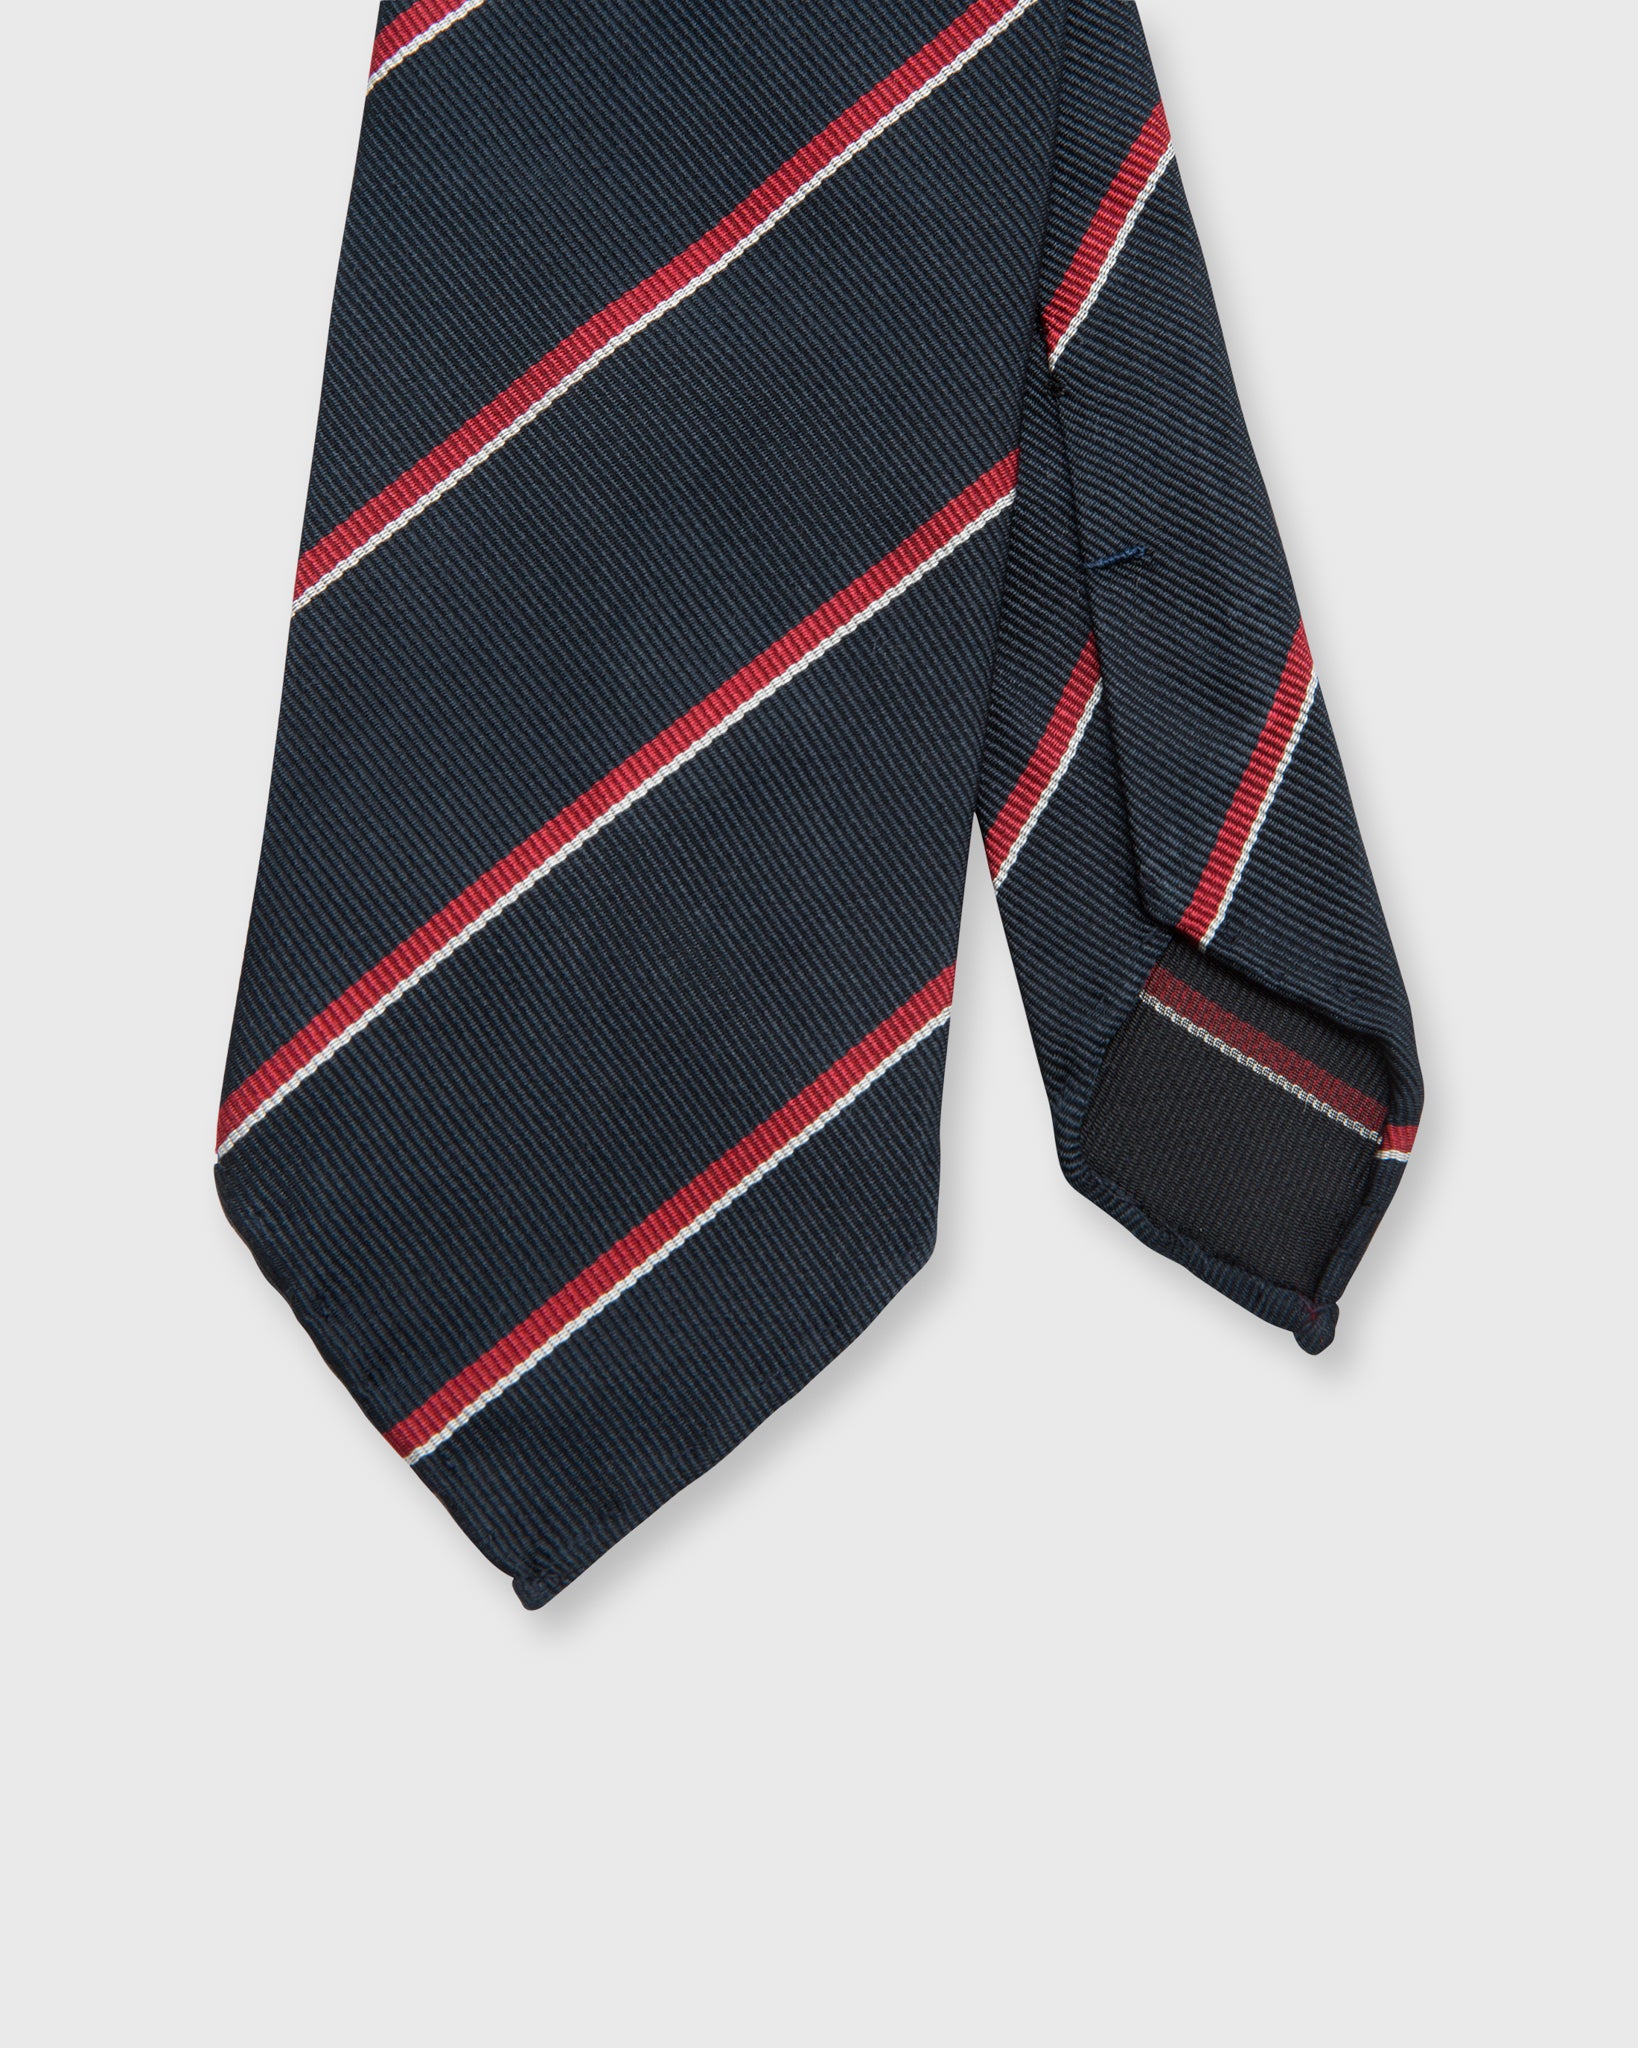 Silk Repp Tie Midnight/Red/White Stripe